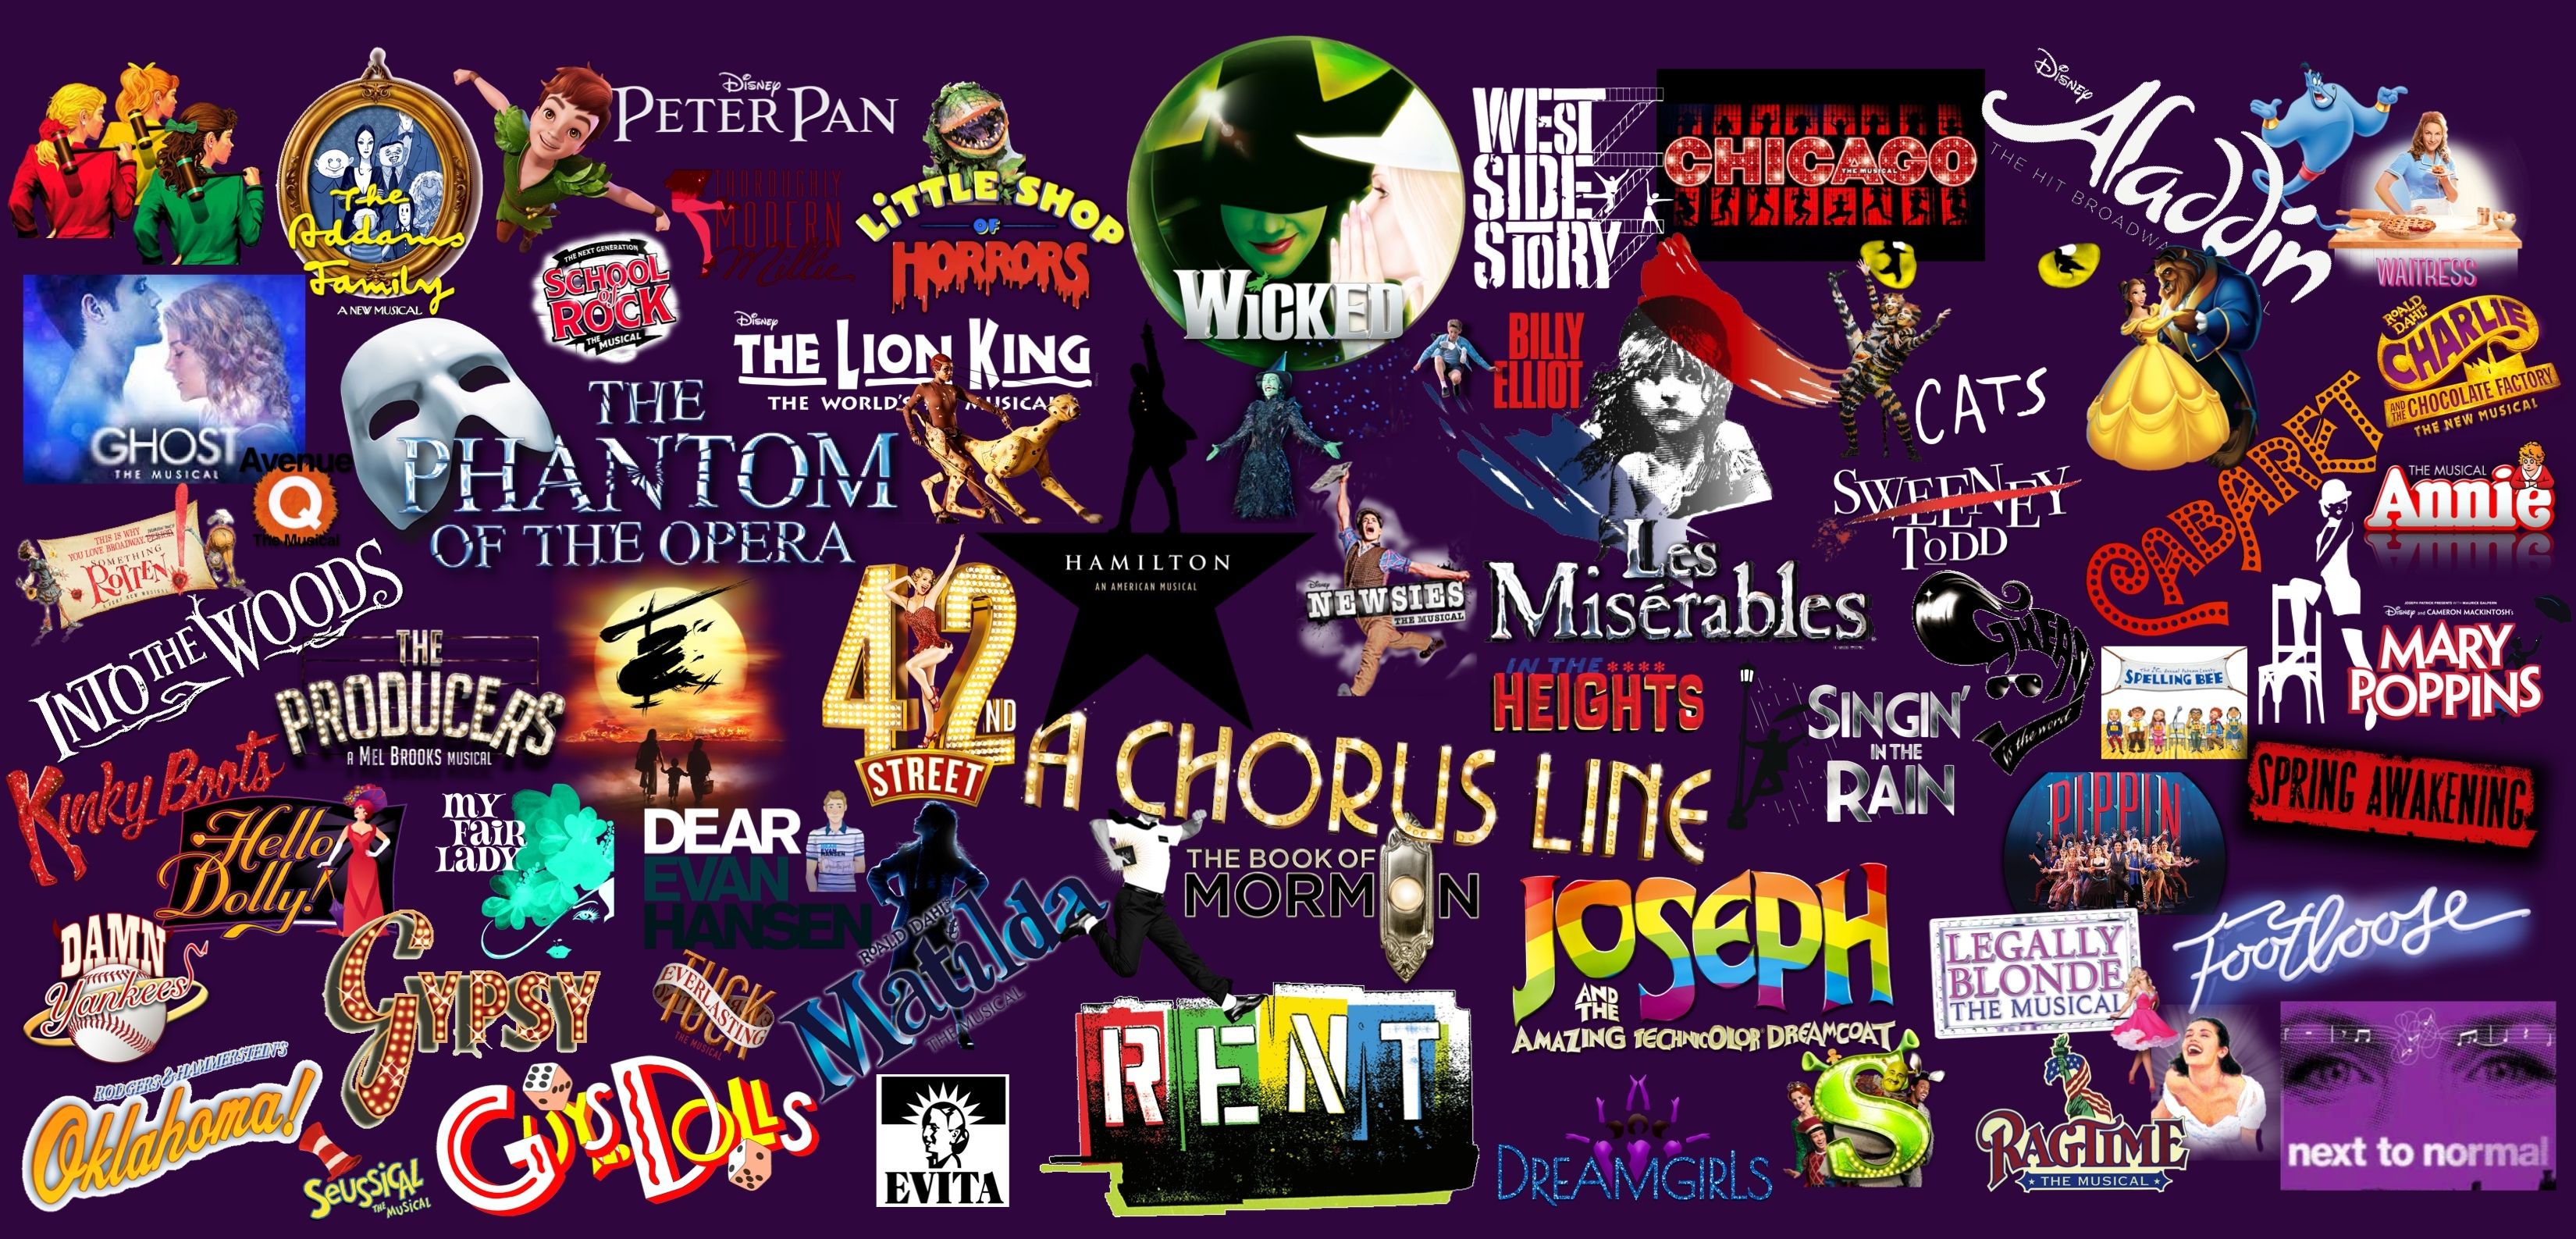 Broadway Musicals wallpaper. Musical wallpaper, Broadway musicals, Musicals